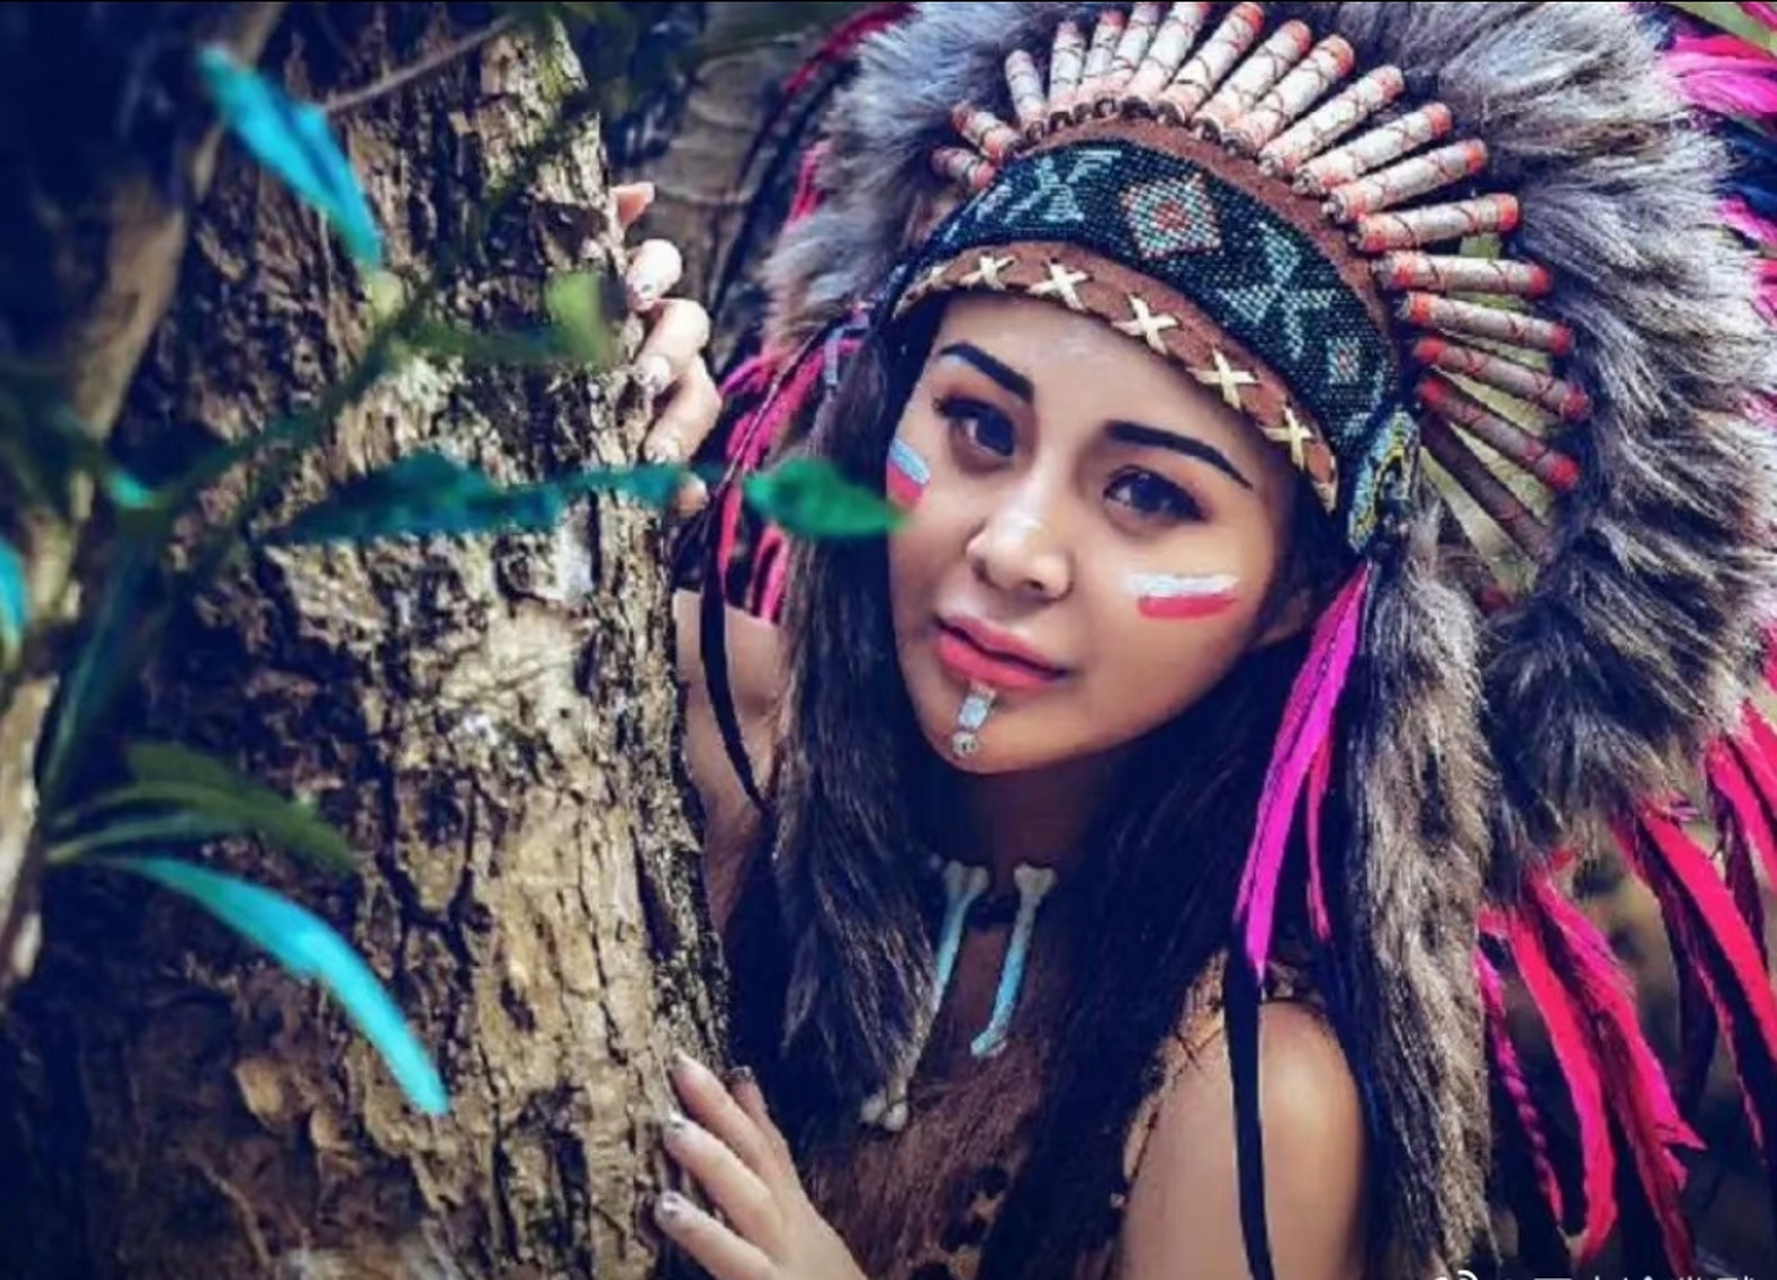 亚马逊原始雨林的印第安人部落中,有一支纯女性部落,一直坚守着不允许